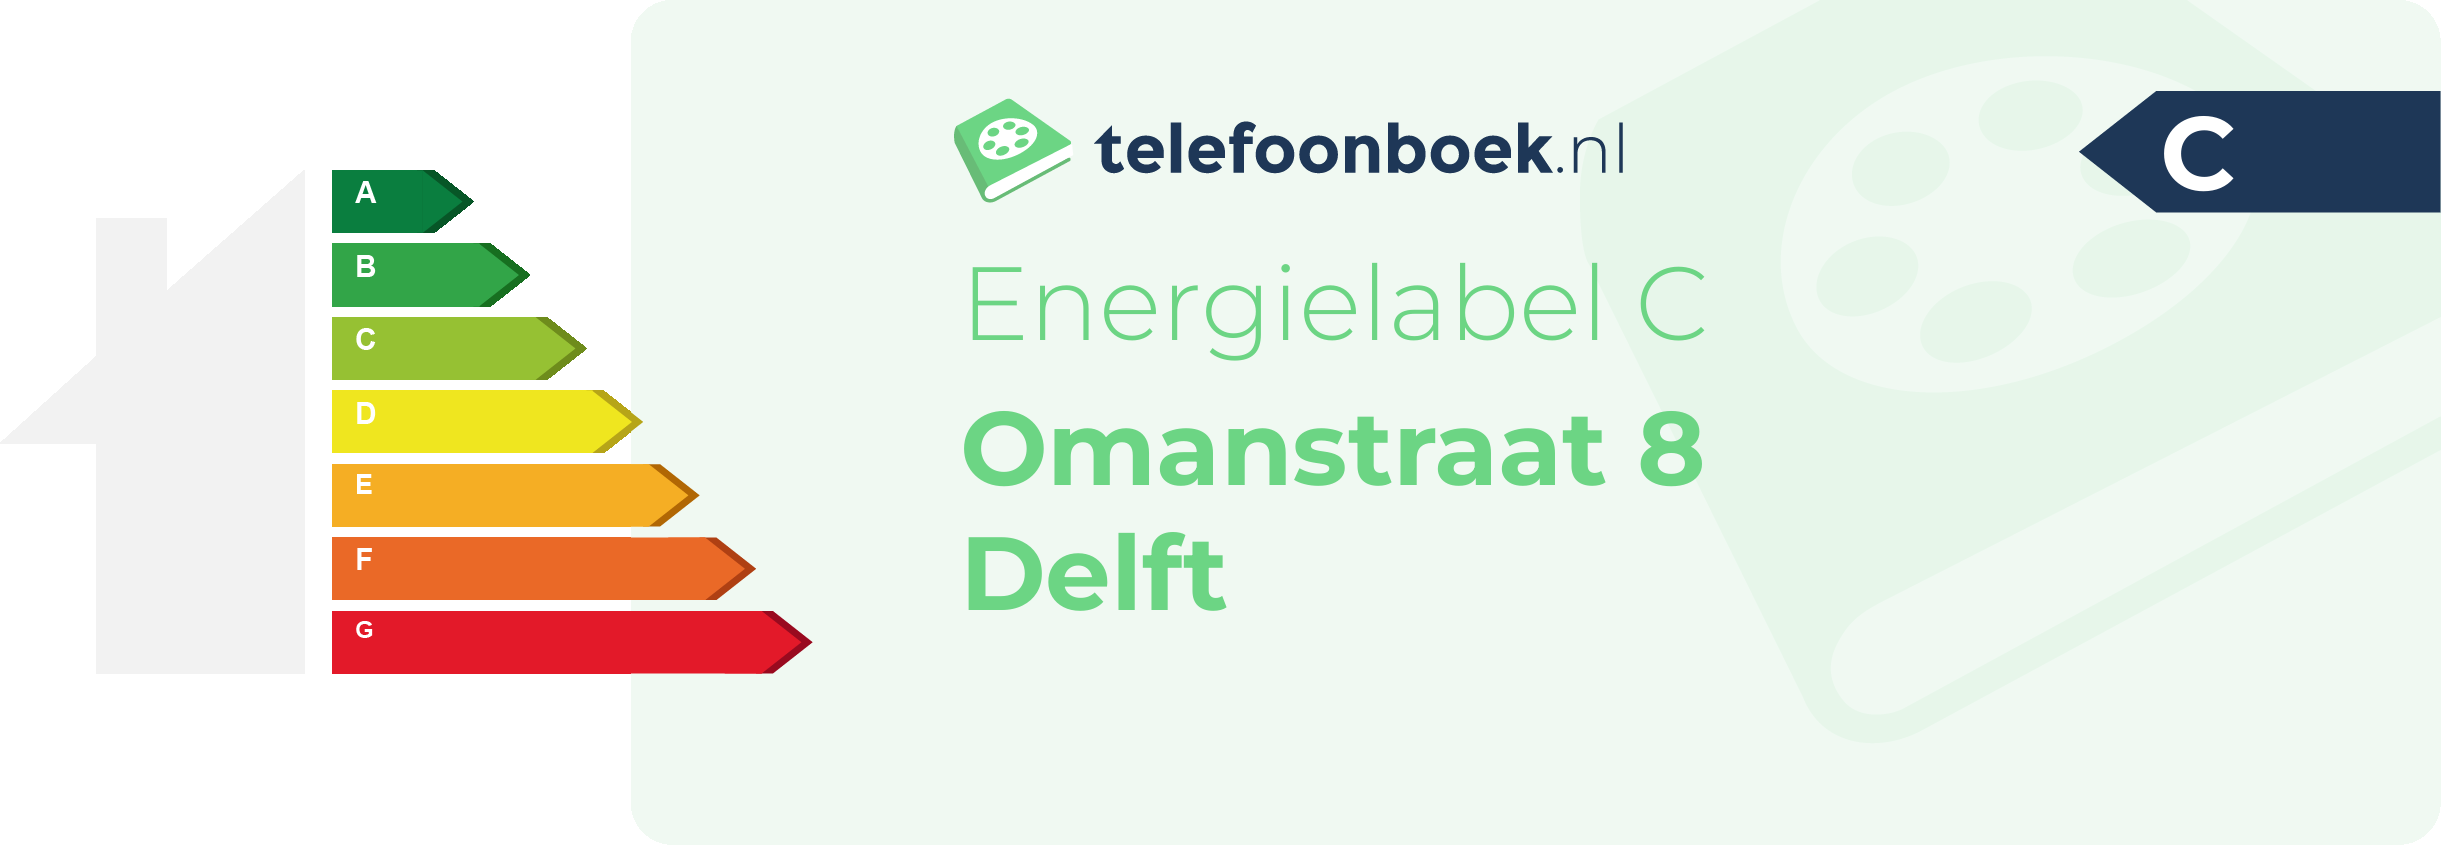 Energielabel Omanstraat 8 Delft